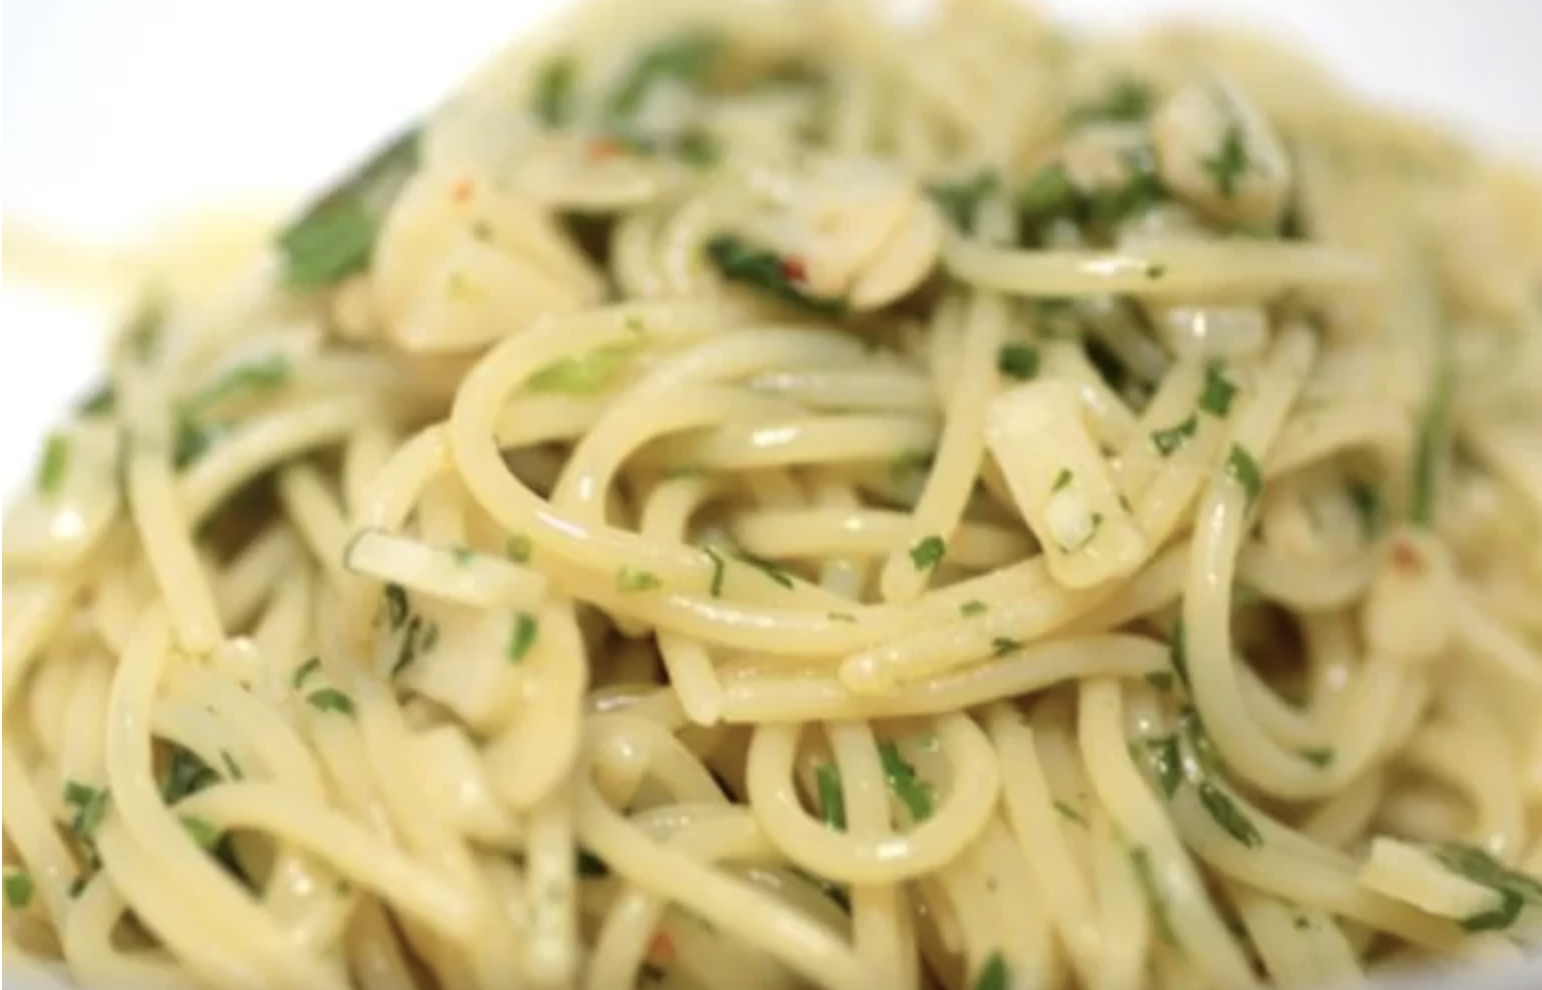 spaghetti-aglio-olio-di-alessandro-borghese,-il-trucco-dello-chef:-“cosa-metto-dall’acqua-prima-della-pasta”